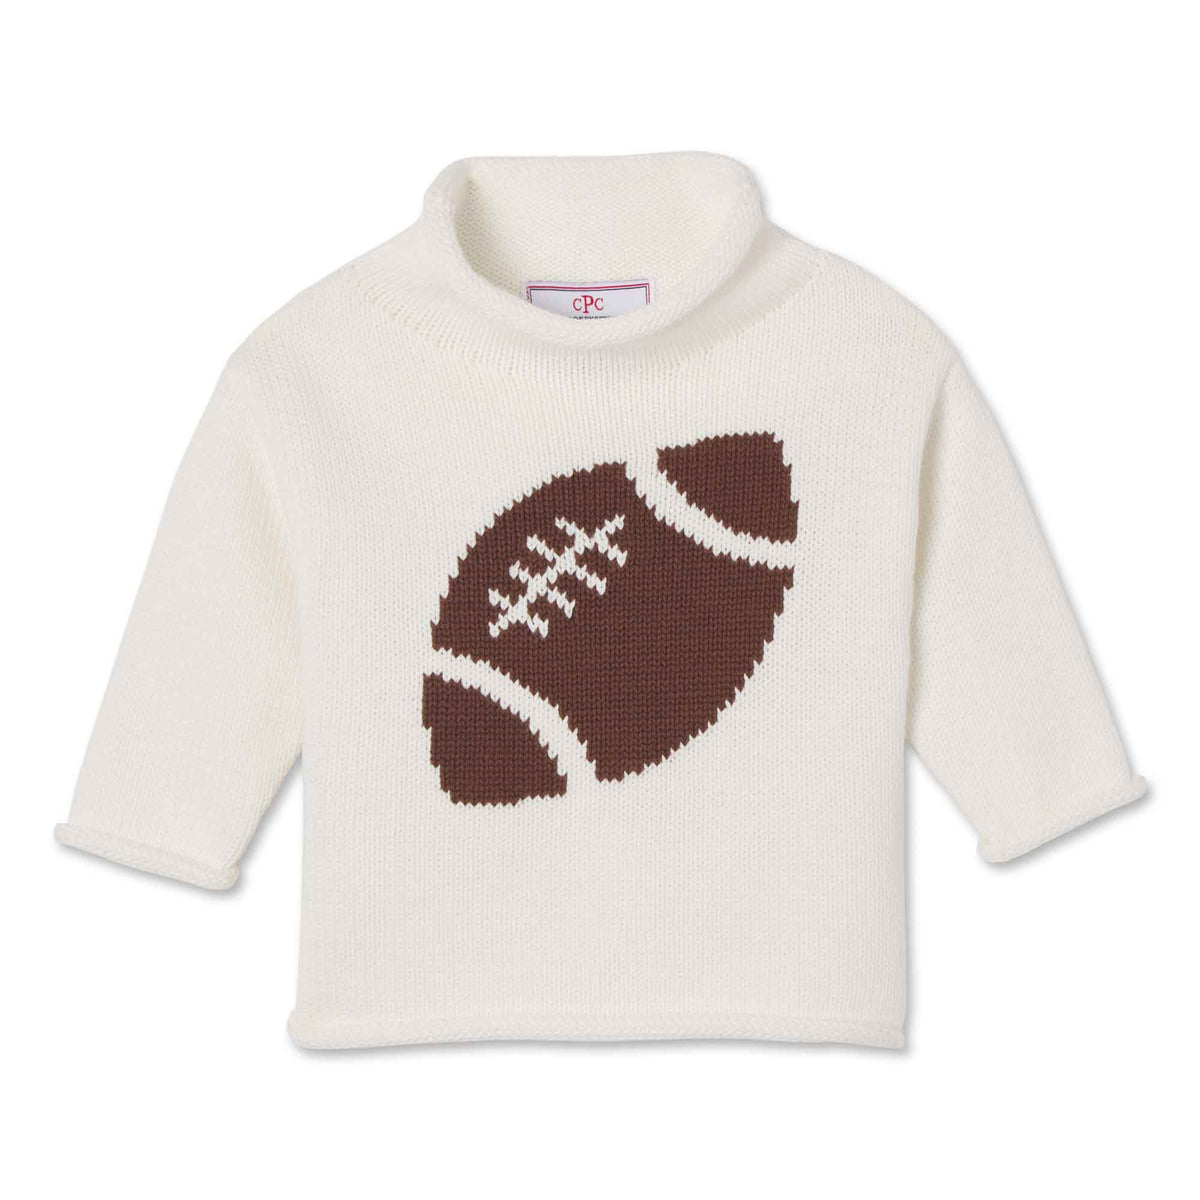 Classic and Preppy Fraser Roll Neck Football Intarsia Sweater, Cannoli Cream-Sweaters-Cannoli Cream-6-9M-CPC - Classic Prep Childrenswear